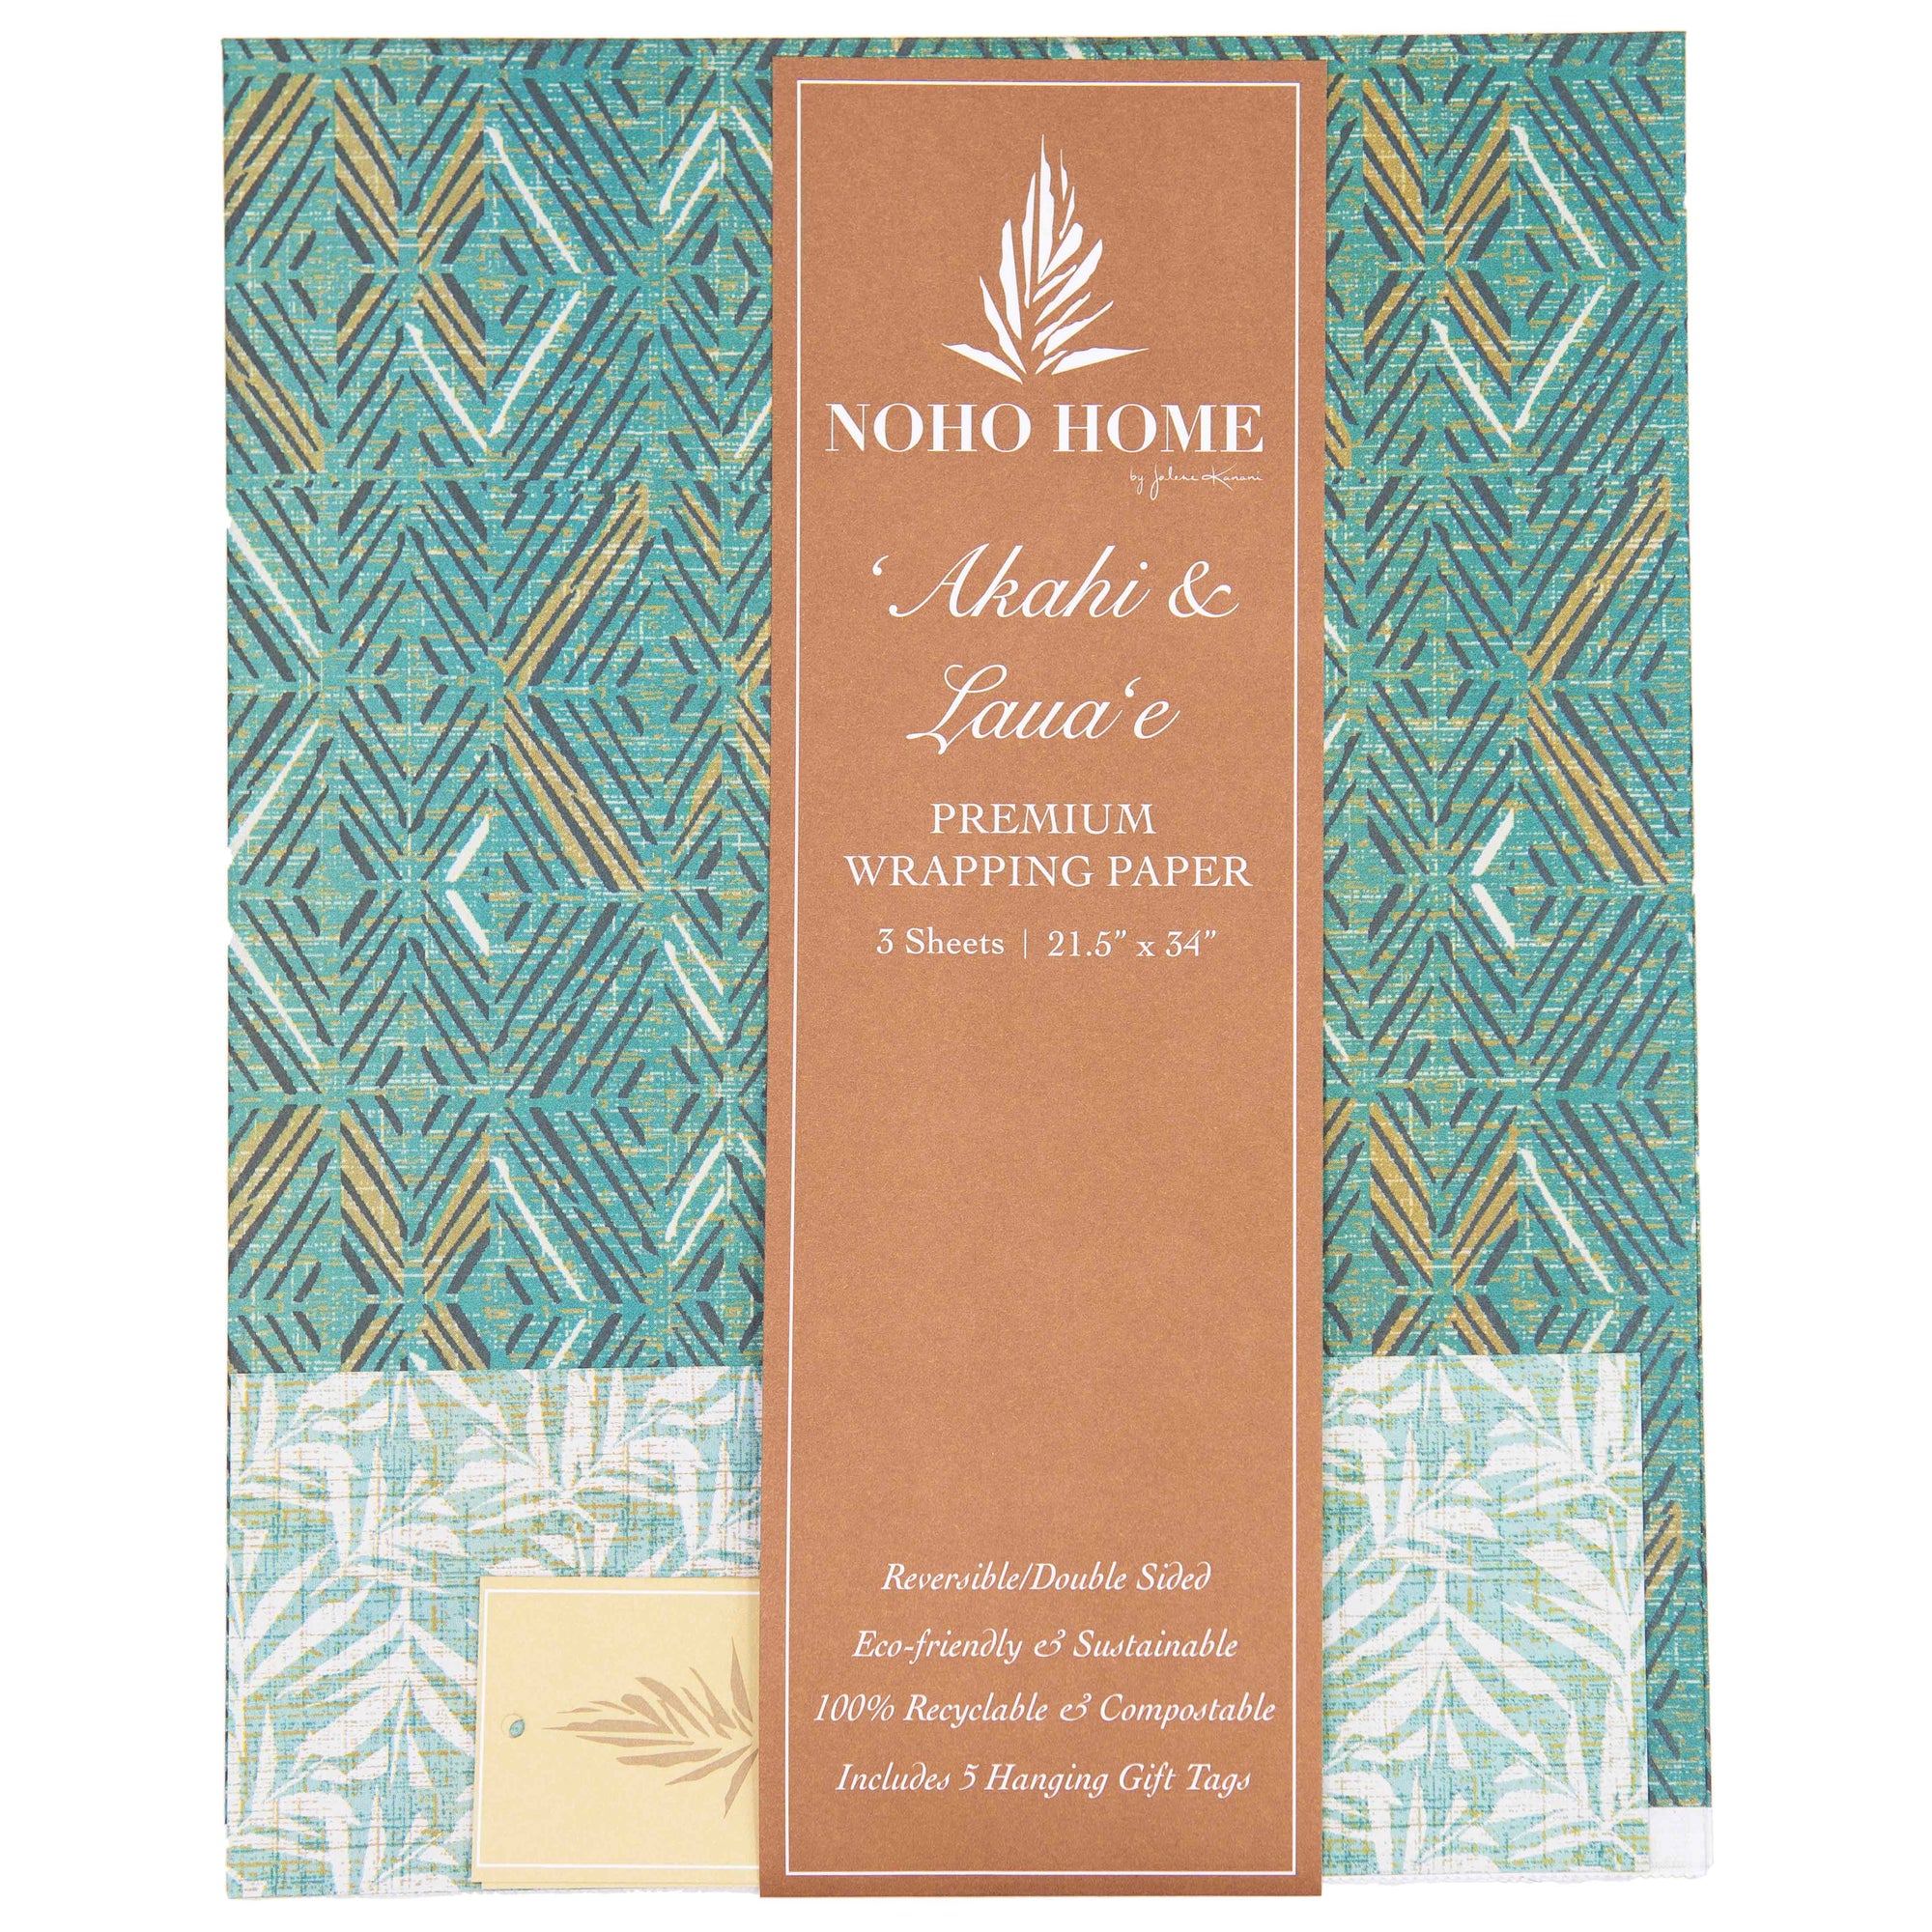 Pop-Up Mākeke - Noho Home - ʻAkahi & Lauaʻe Reversible Wrapping Paper